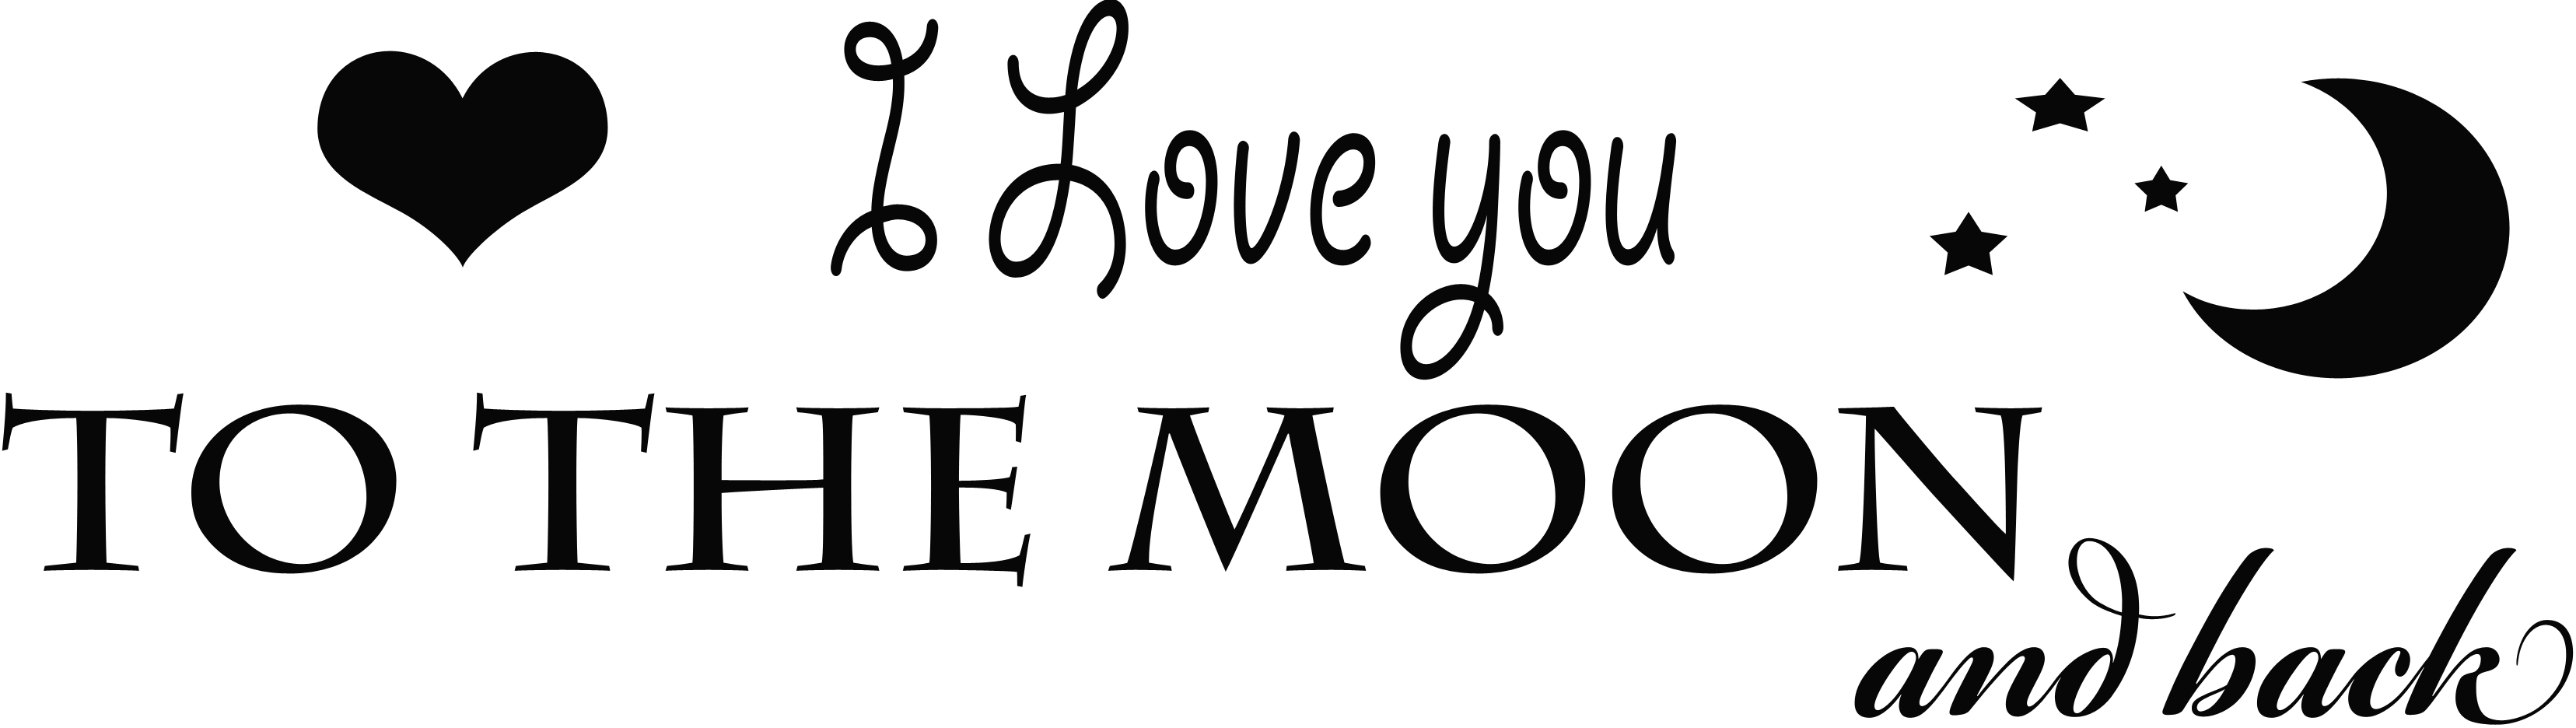 Aku mencintaimu ke bulan dan kembali PNG Gambar Transparan